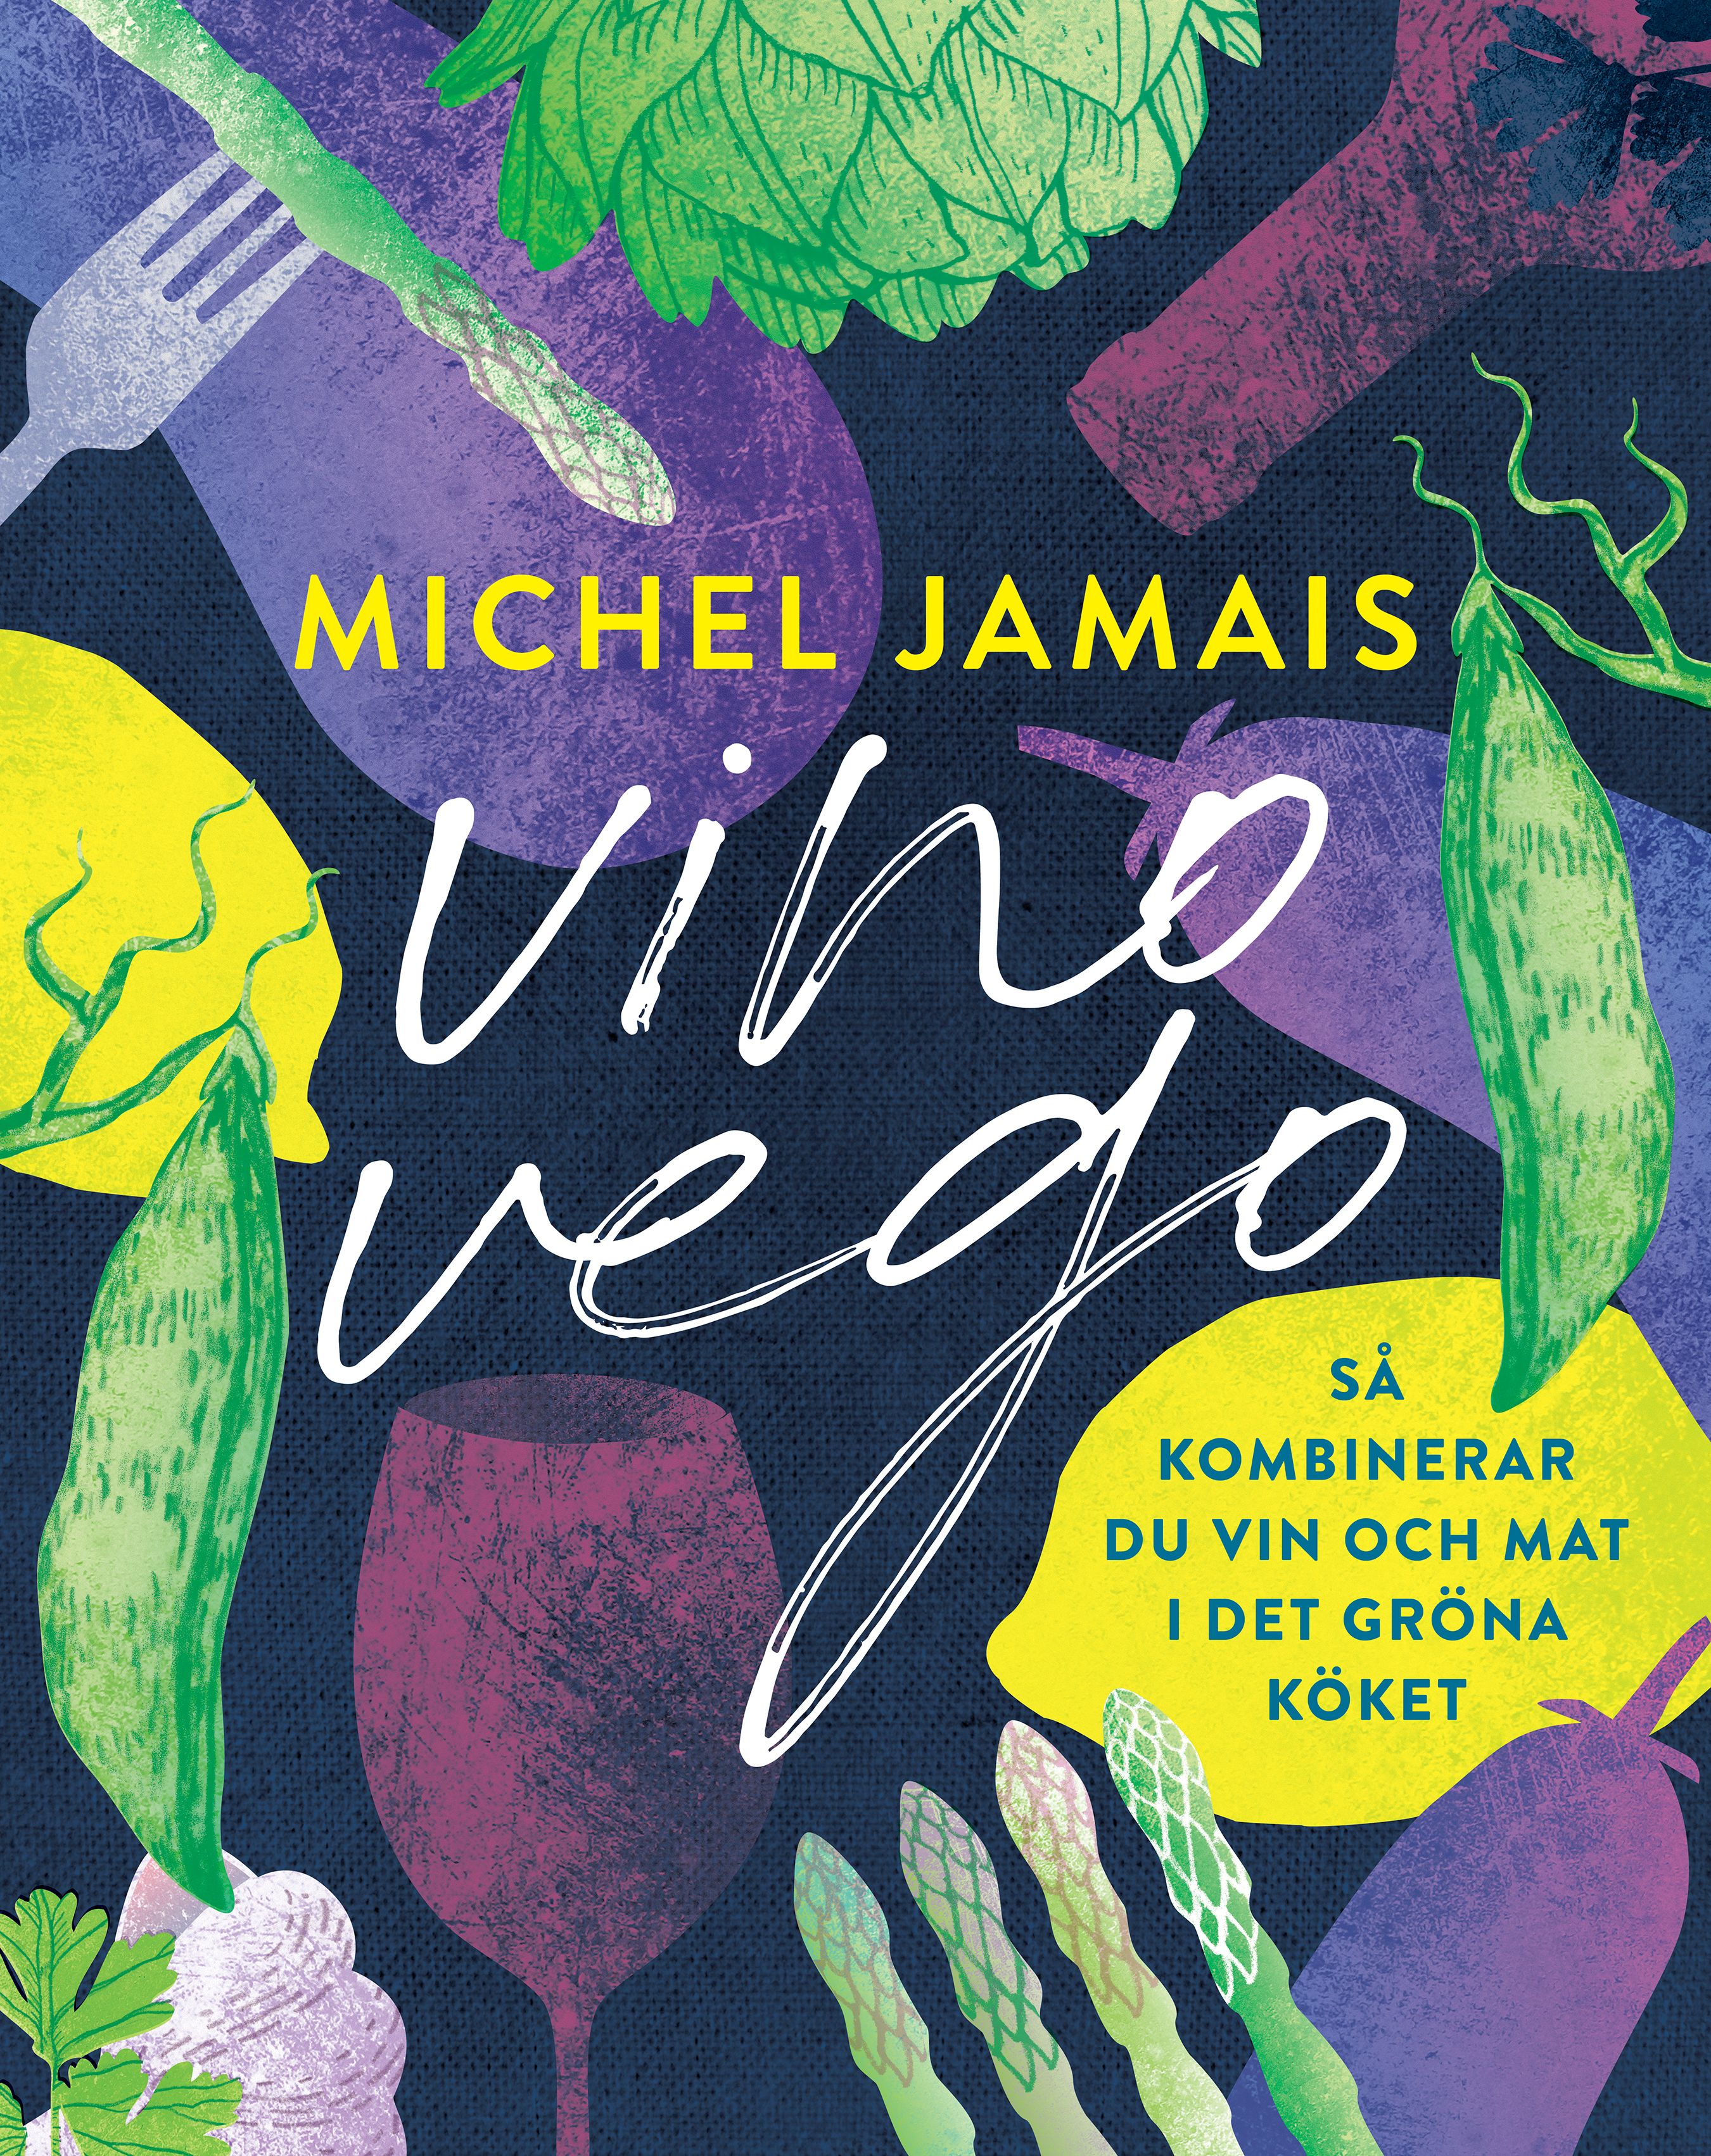 Vino vego : så kombinerar du vin och  mat i det gröna köket, e-bog af Michel Jamais